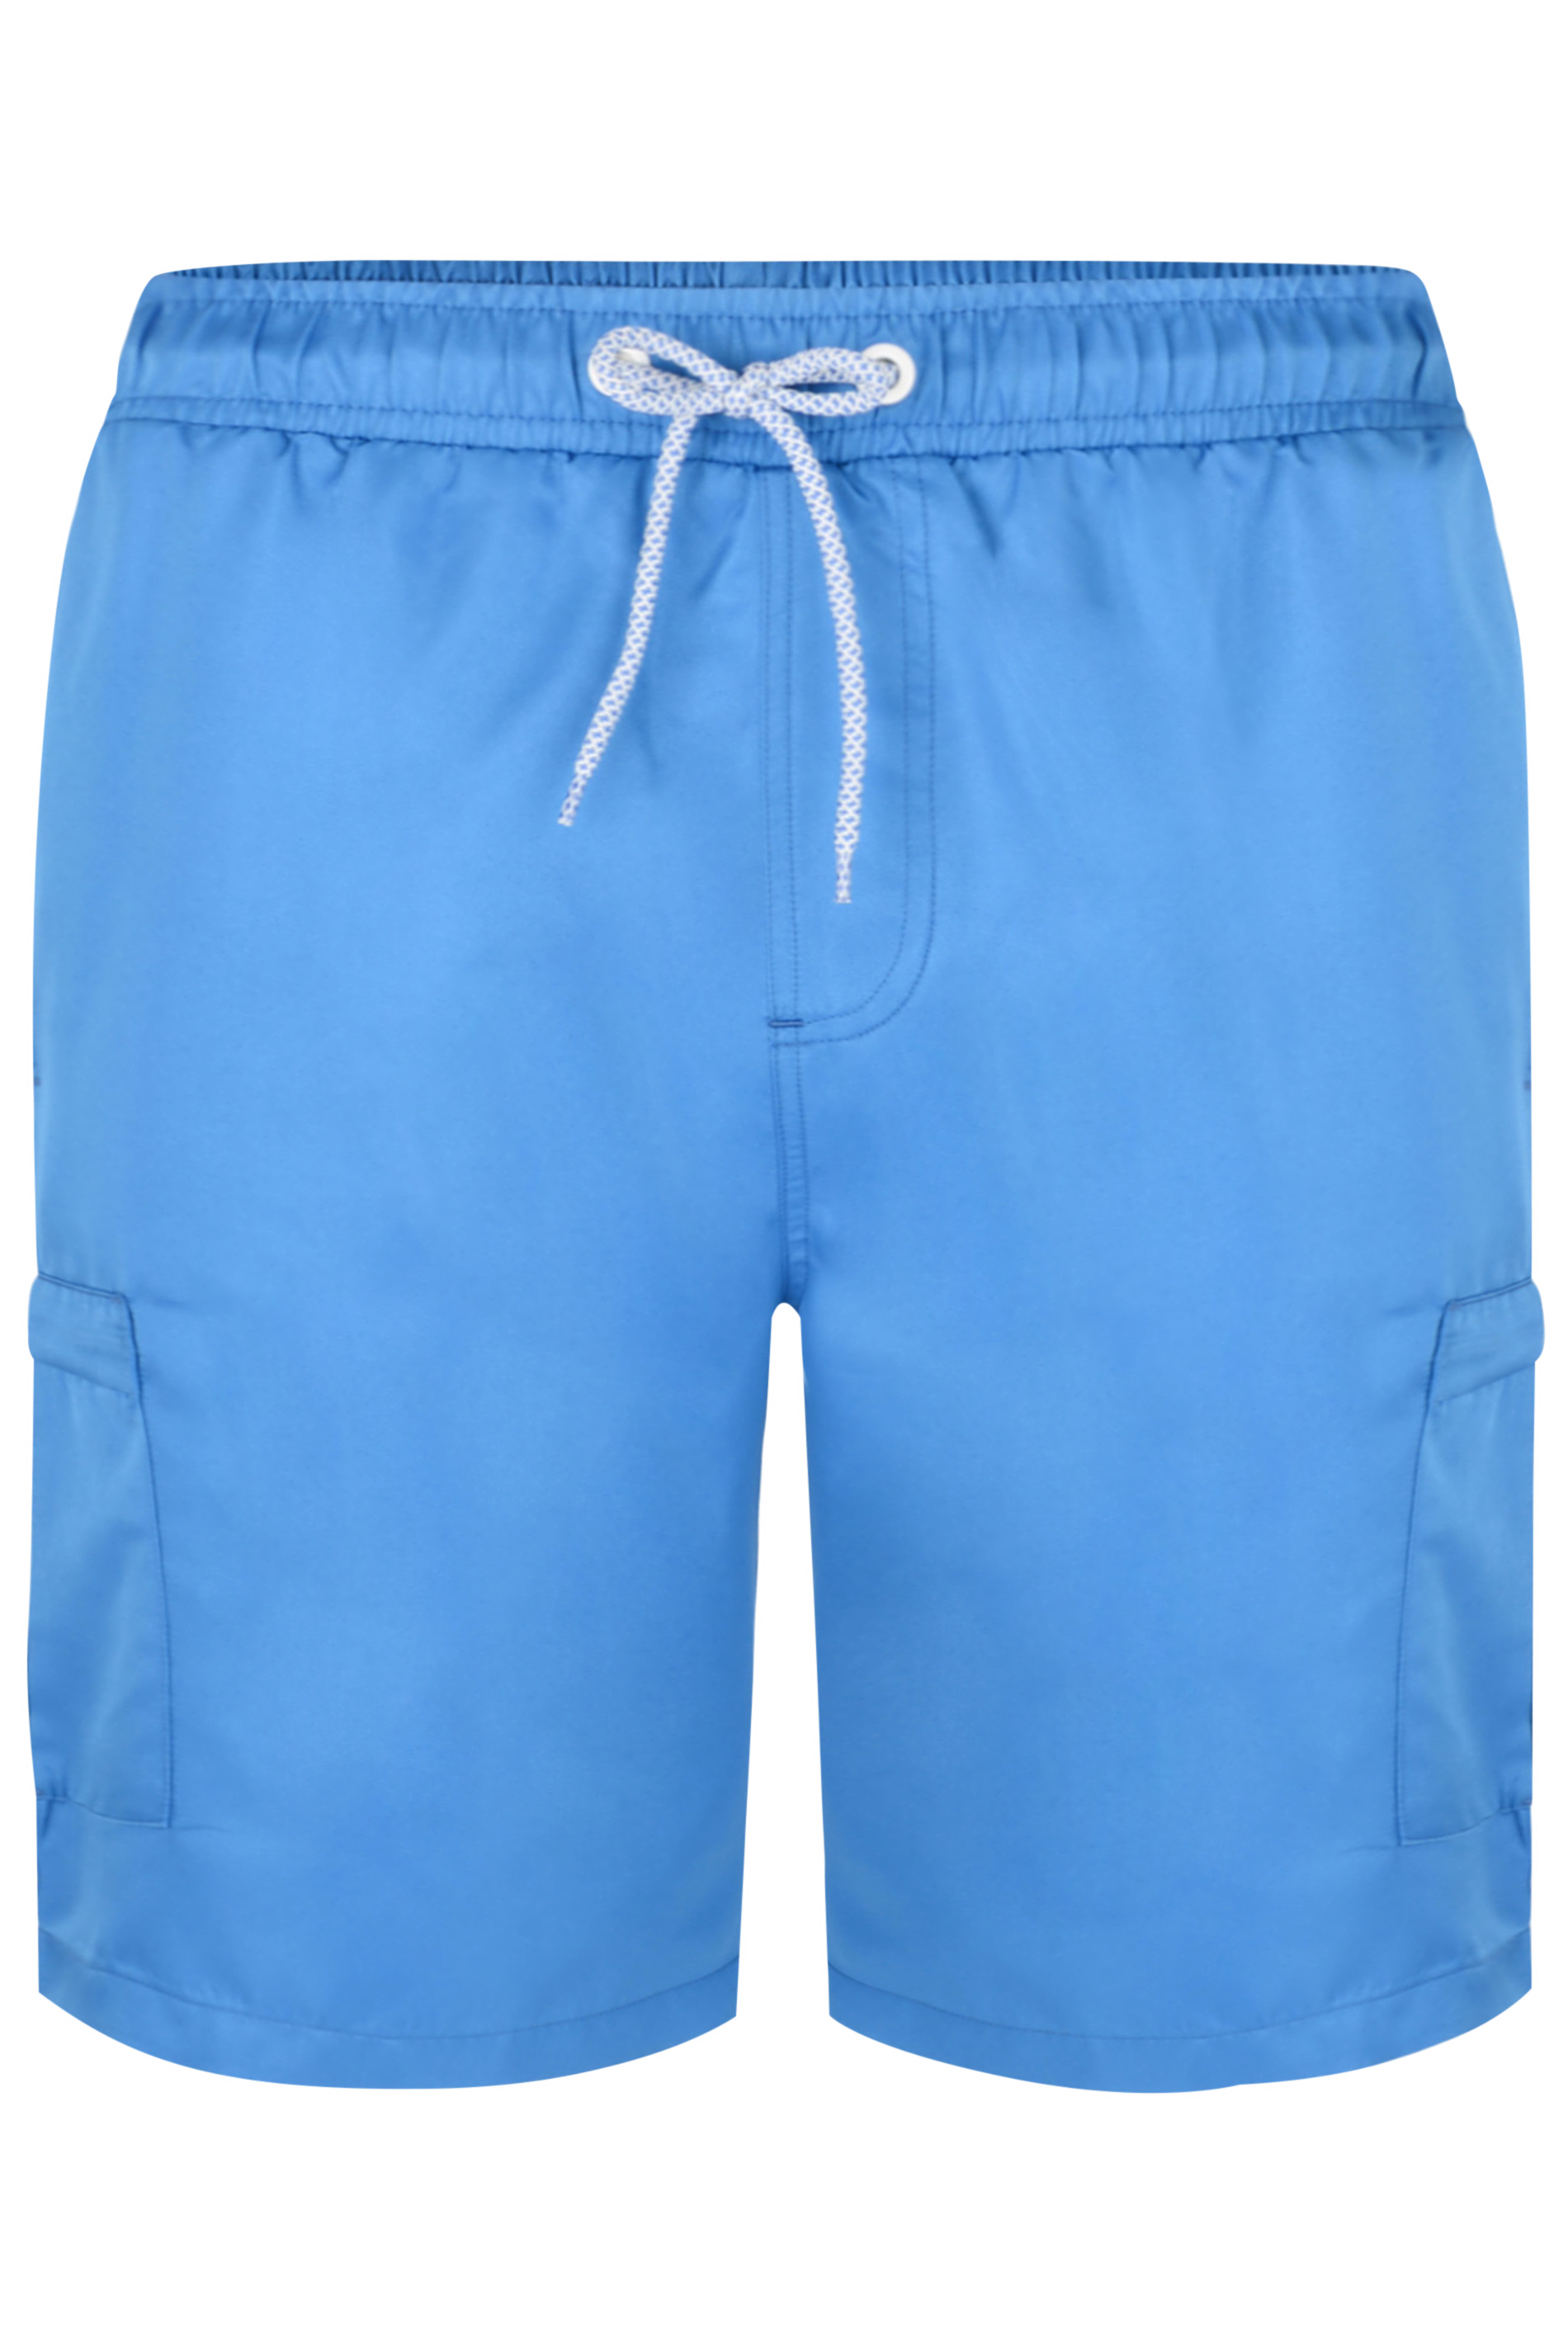 KAM Blue Cargo Swim Shorts | BadRhino 3